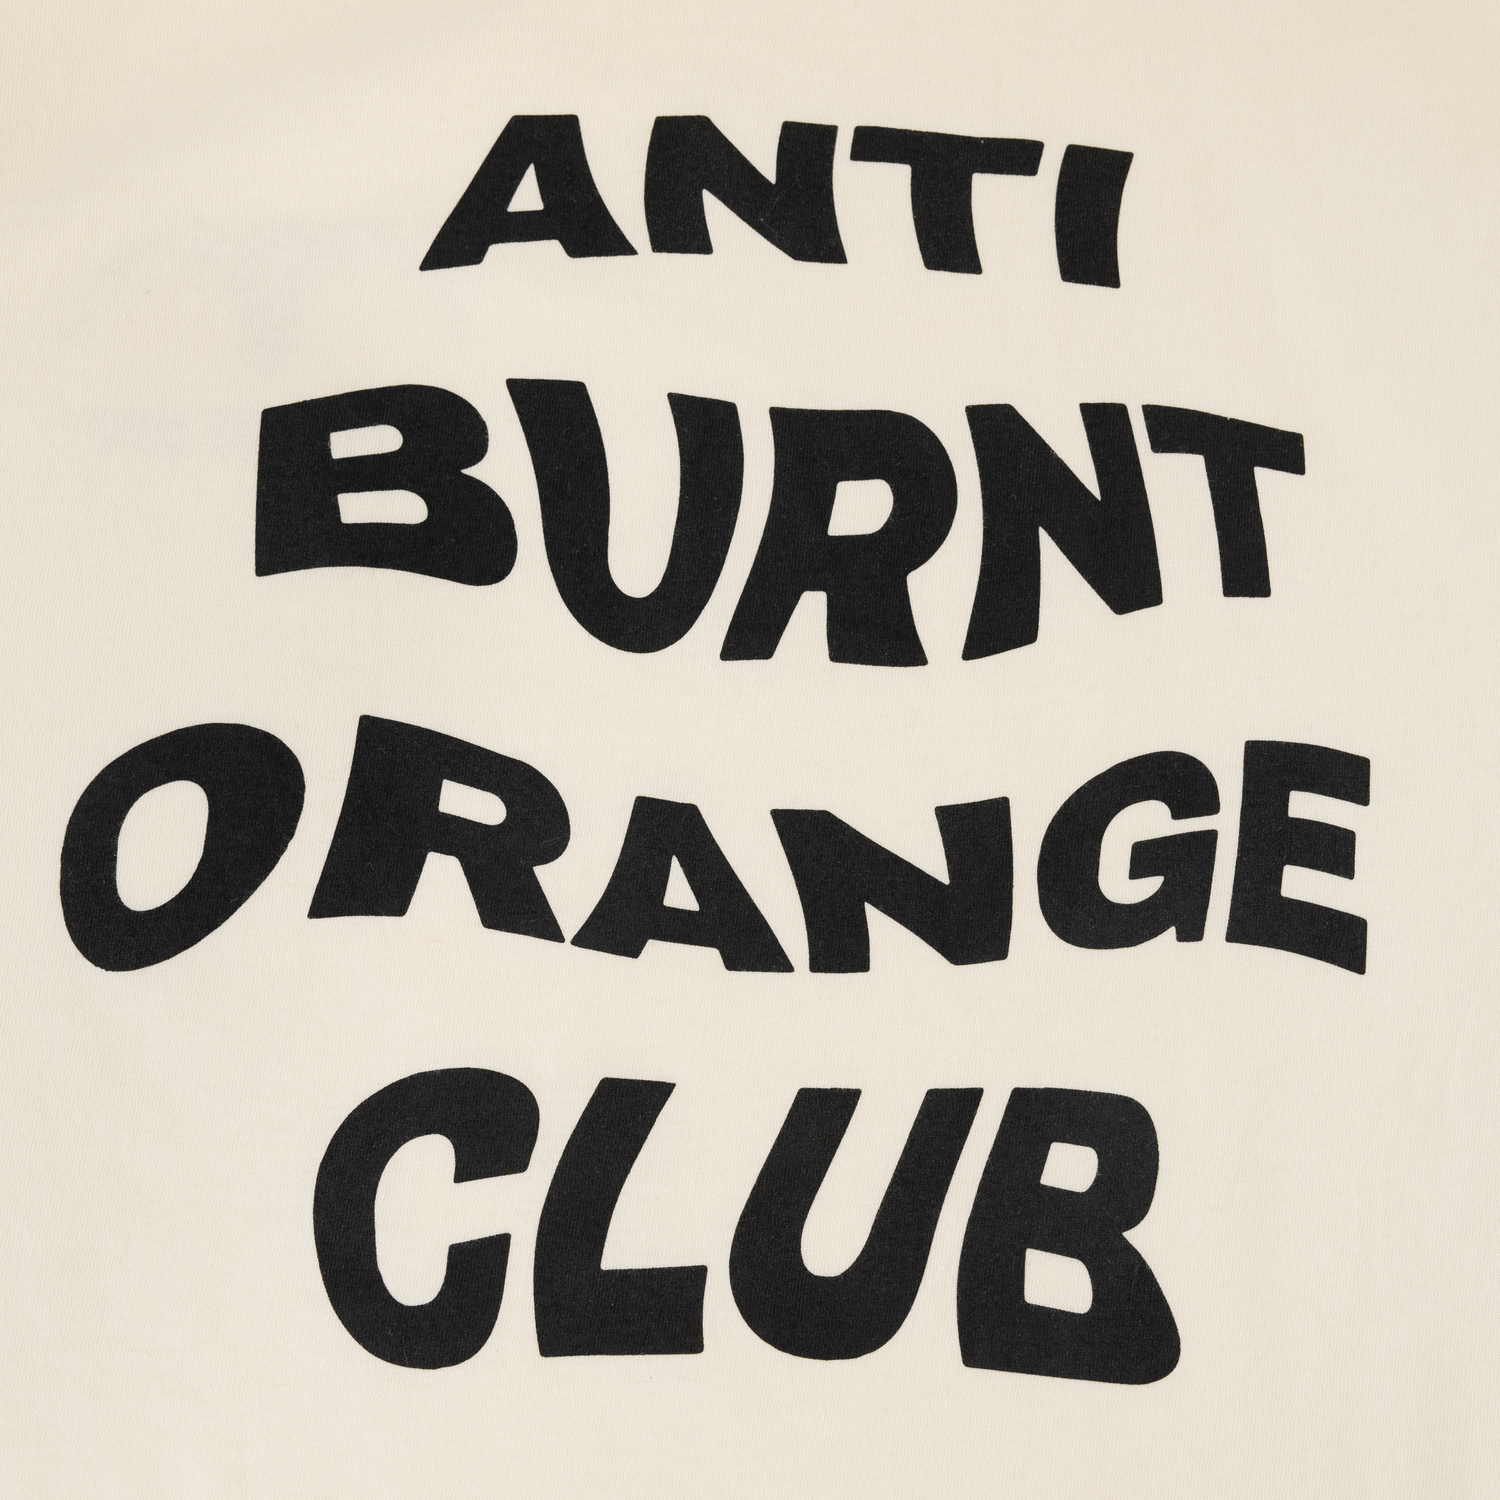 iDigBeauty Swangin & Bangin T-Shirt | Houston | Baseball | Graphic Tee | Orange XLarge